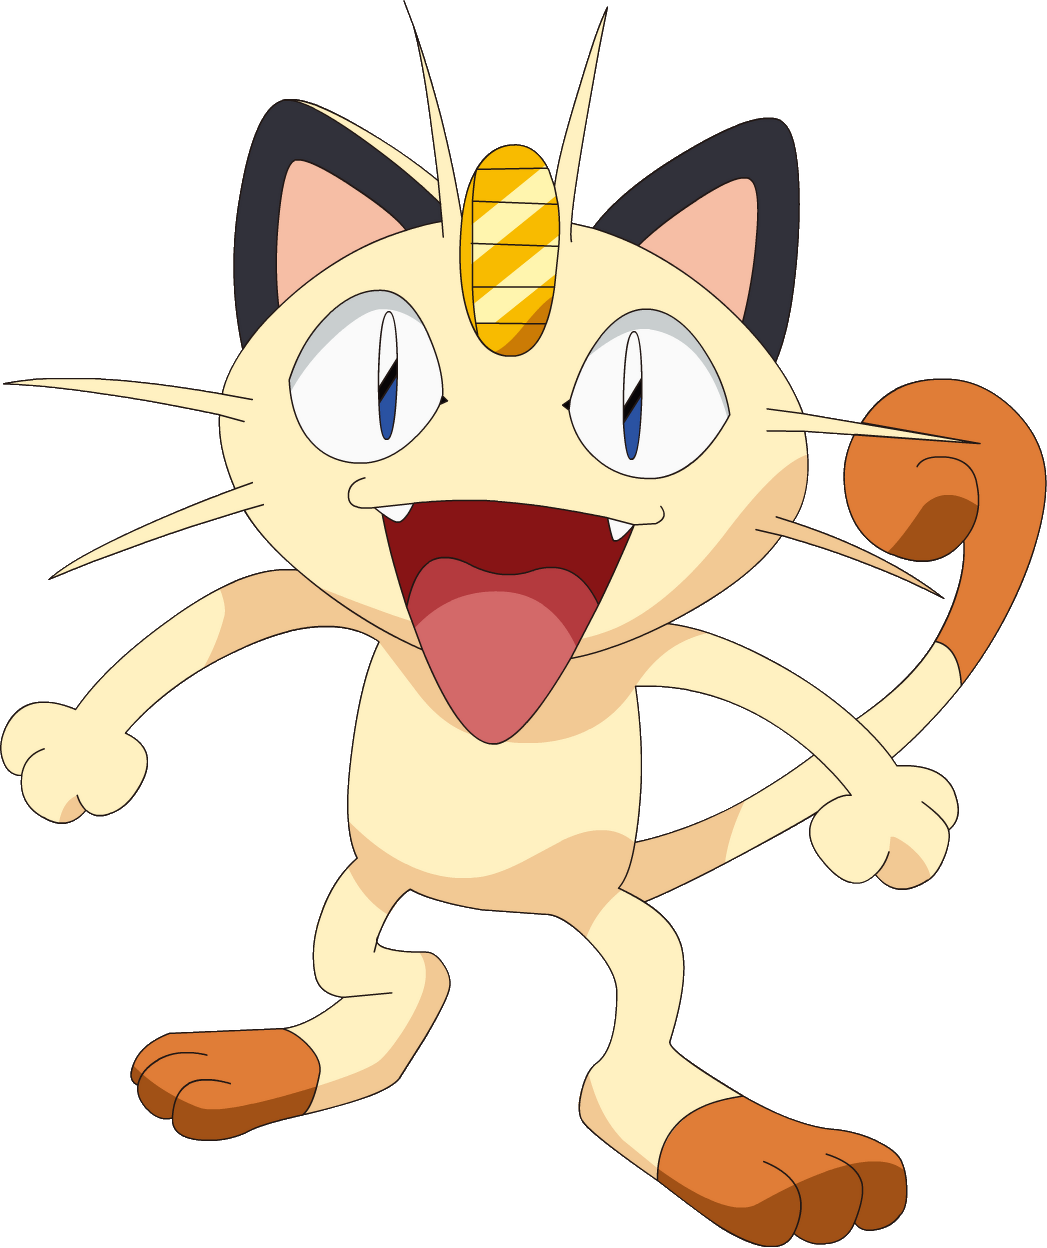 Pokémon Meowth Eat Tamato Berry🔥 #Pokémon #Meowth #SpicyFood